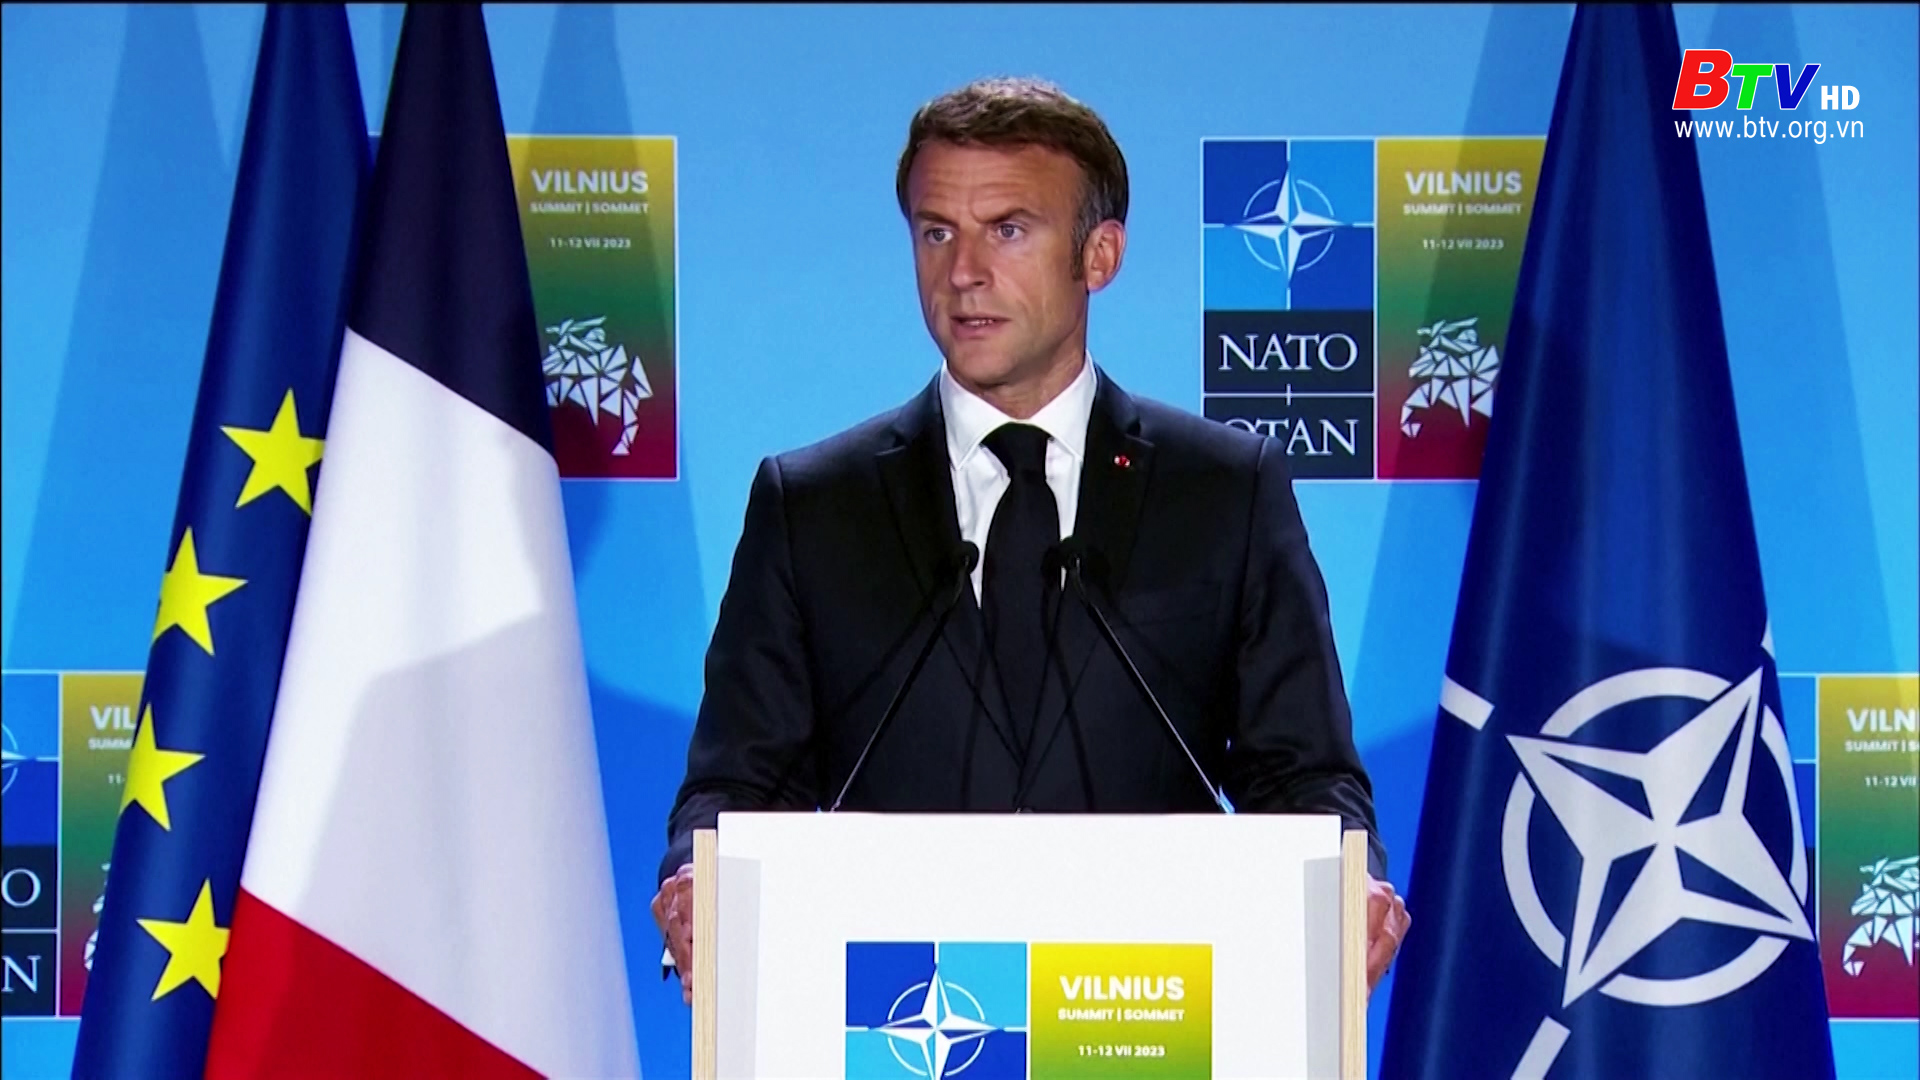 Pháp tiếp tục phản đối việc NATO mở văn phòng ở Nhật Bản